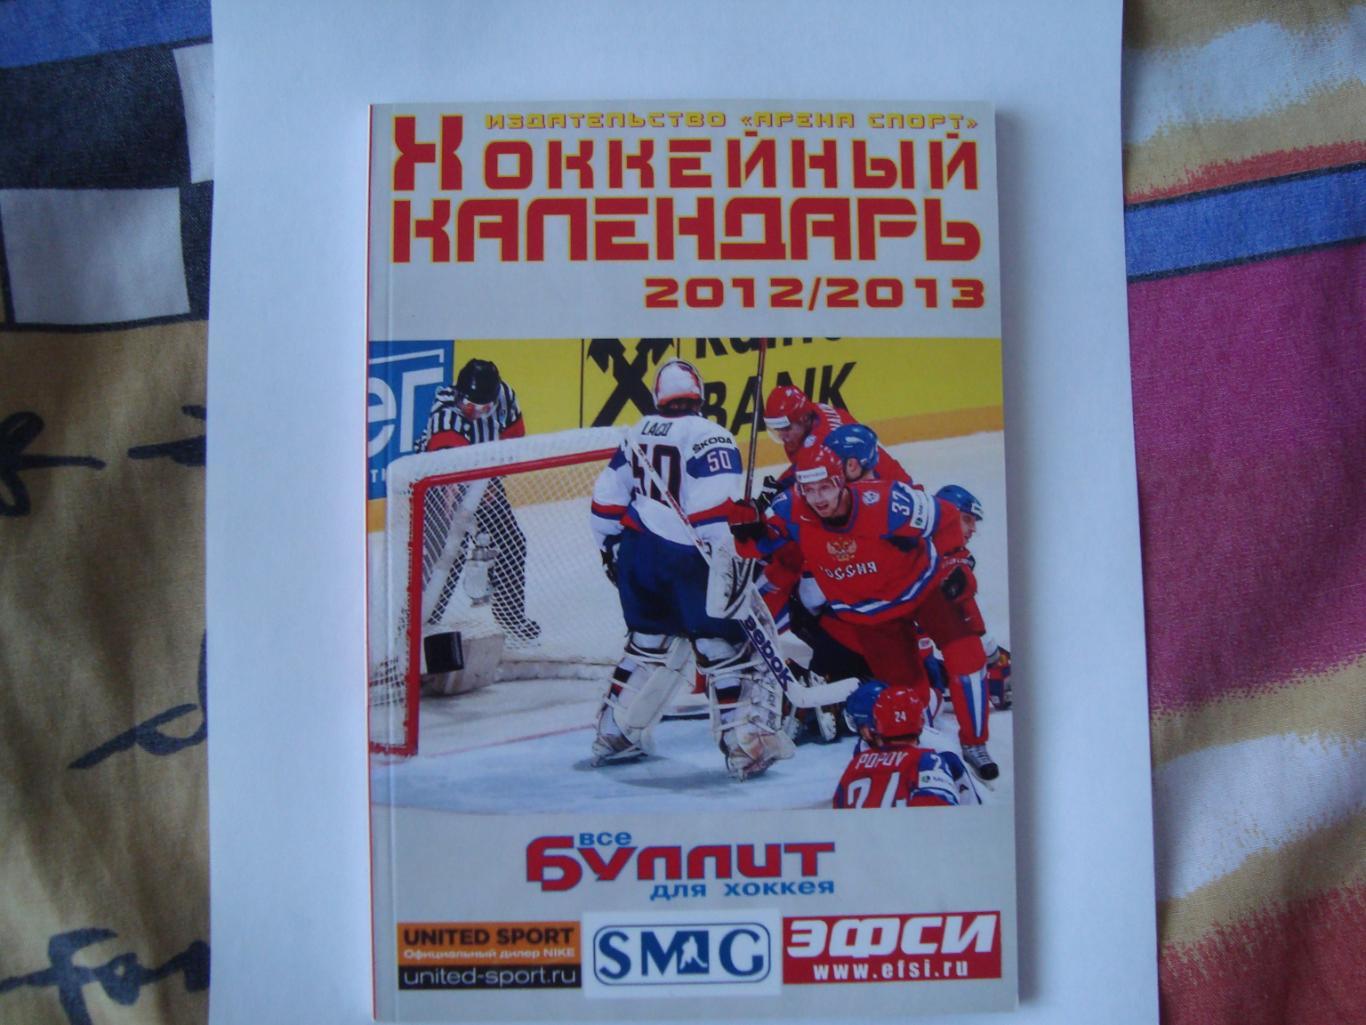 Хоккейный календарь 2012/2013 Москва Арена спорт